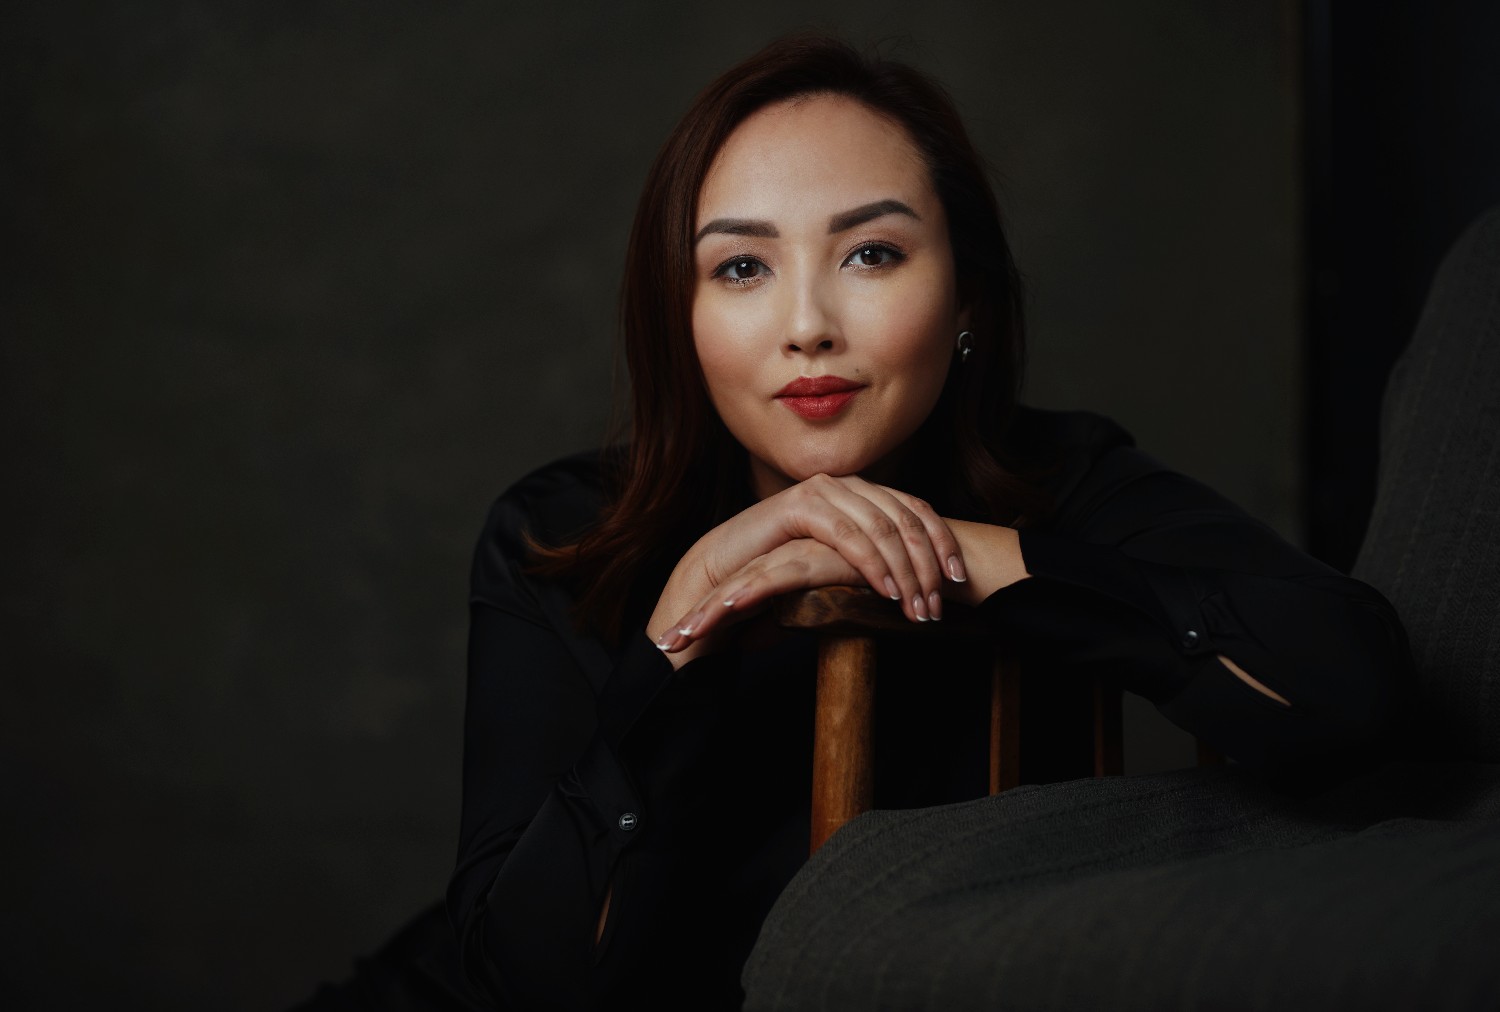 «Бьет – значит убьет». Жанна Уразбахова о том, когда прекратится насилие в казахстанских семьях